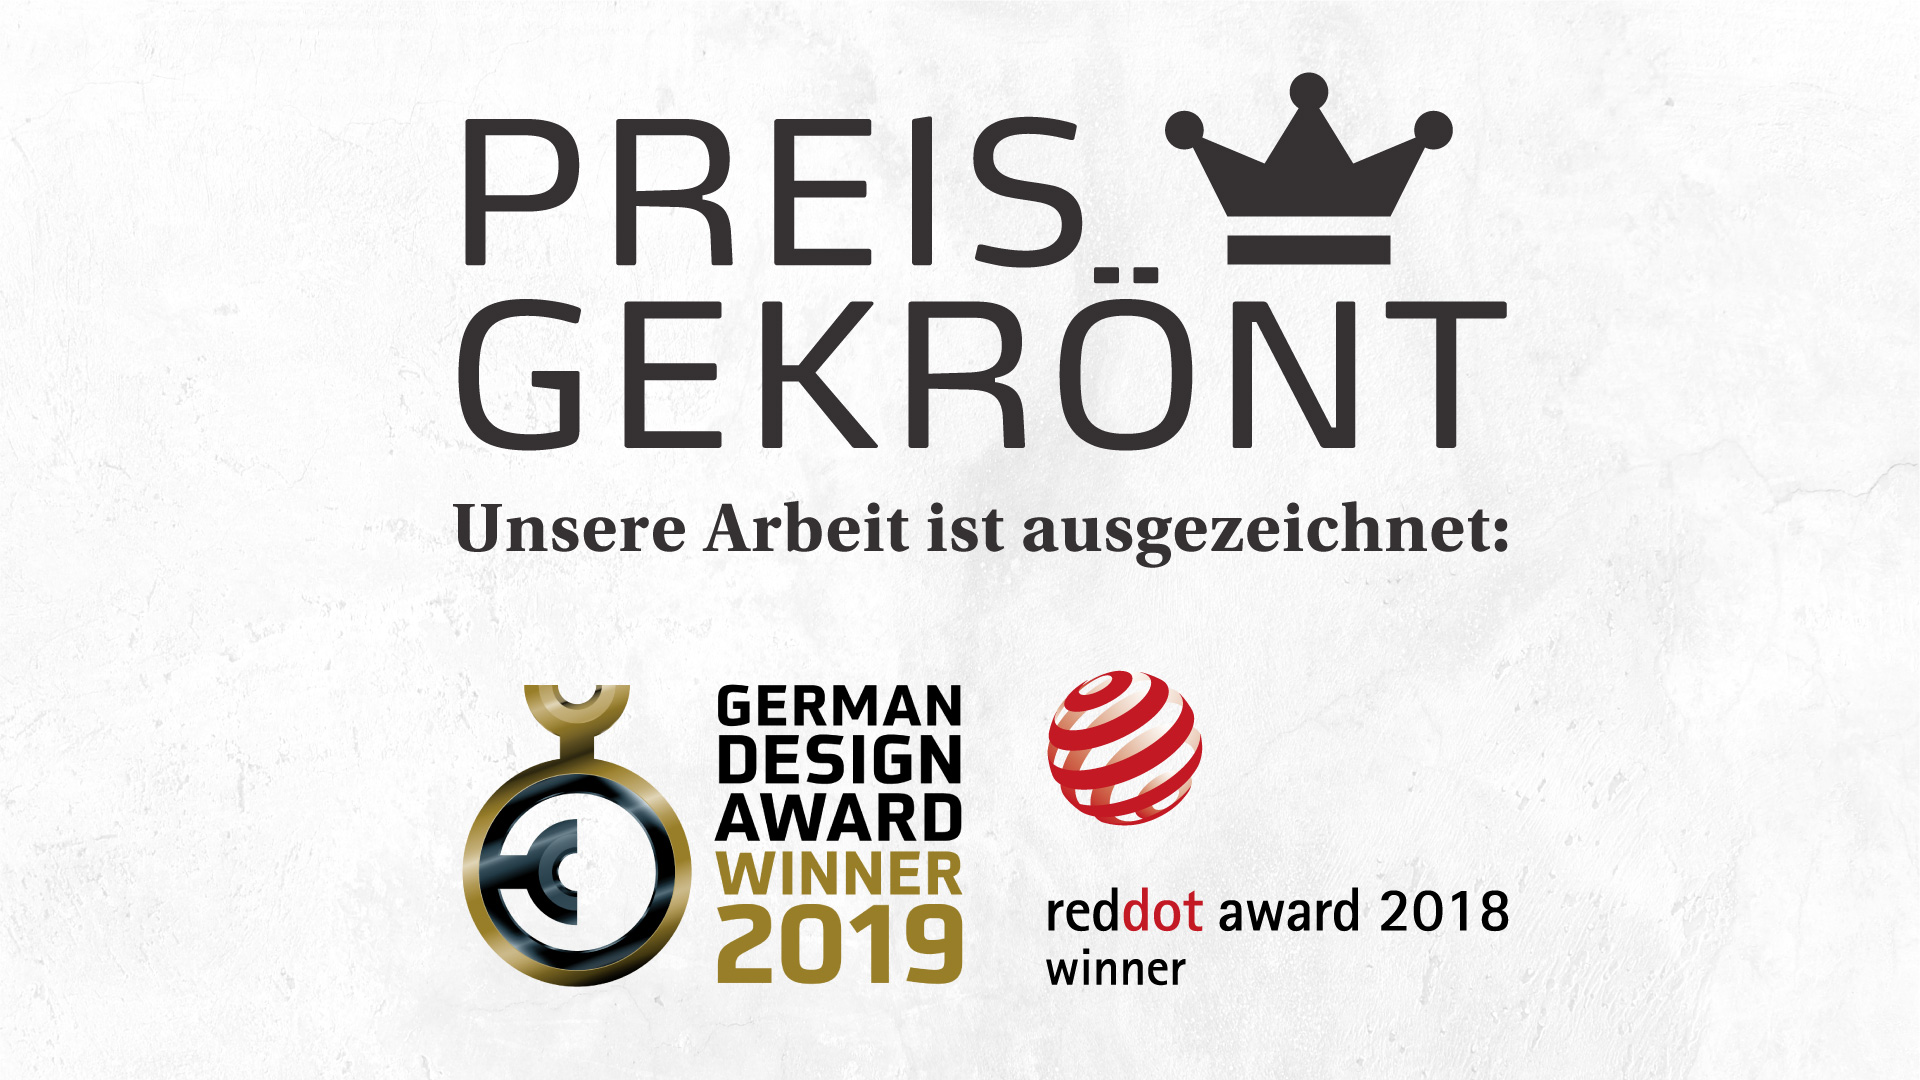 Ausgezeichnet mit reddot award 2019 und German Design Award 2019